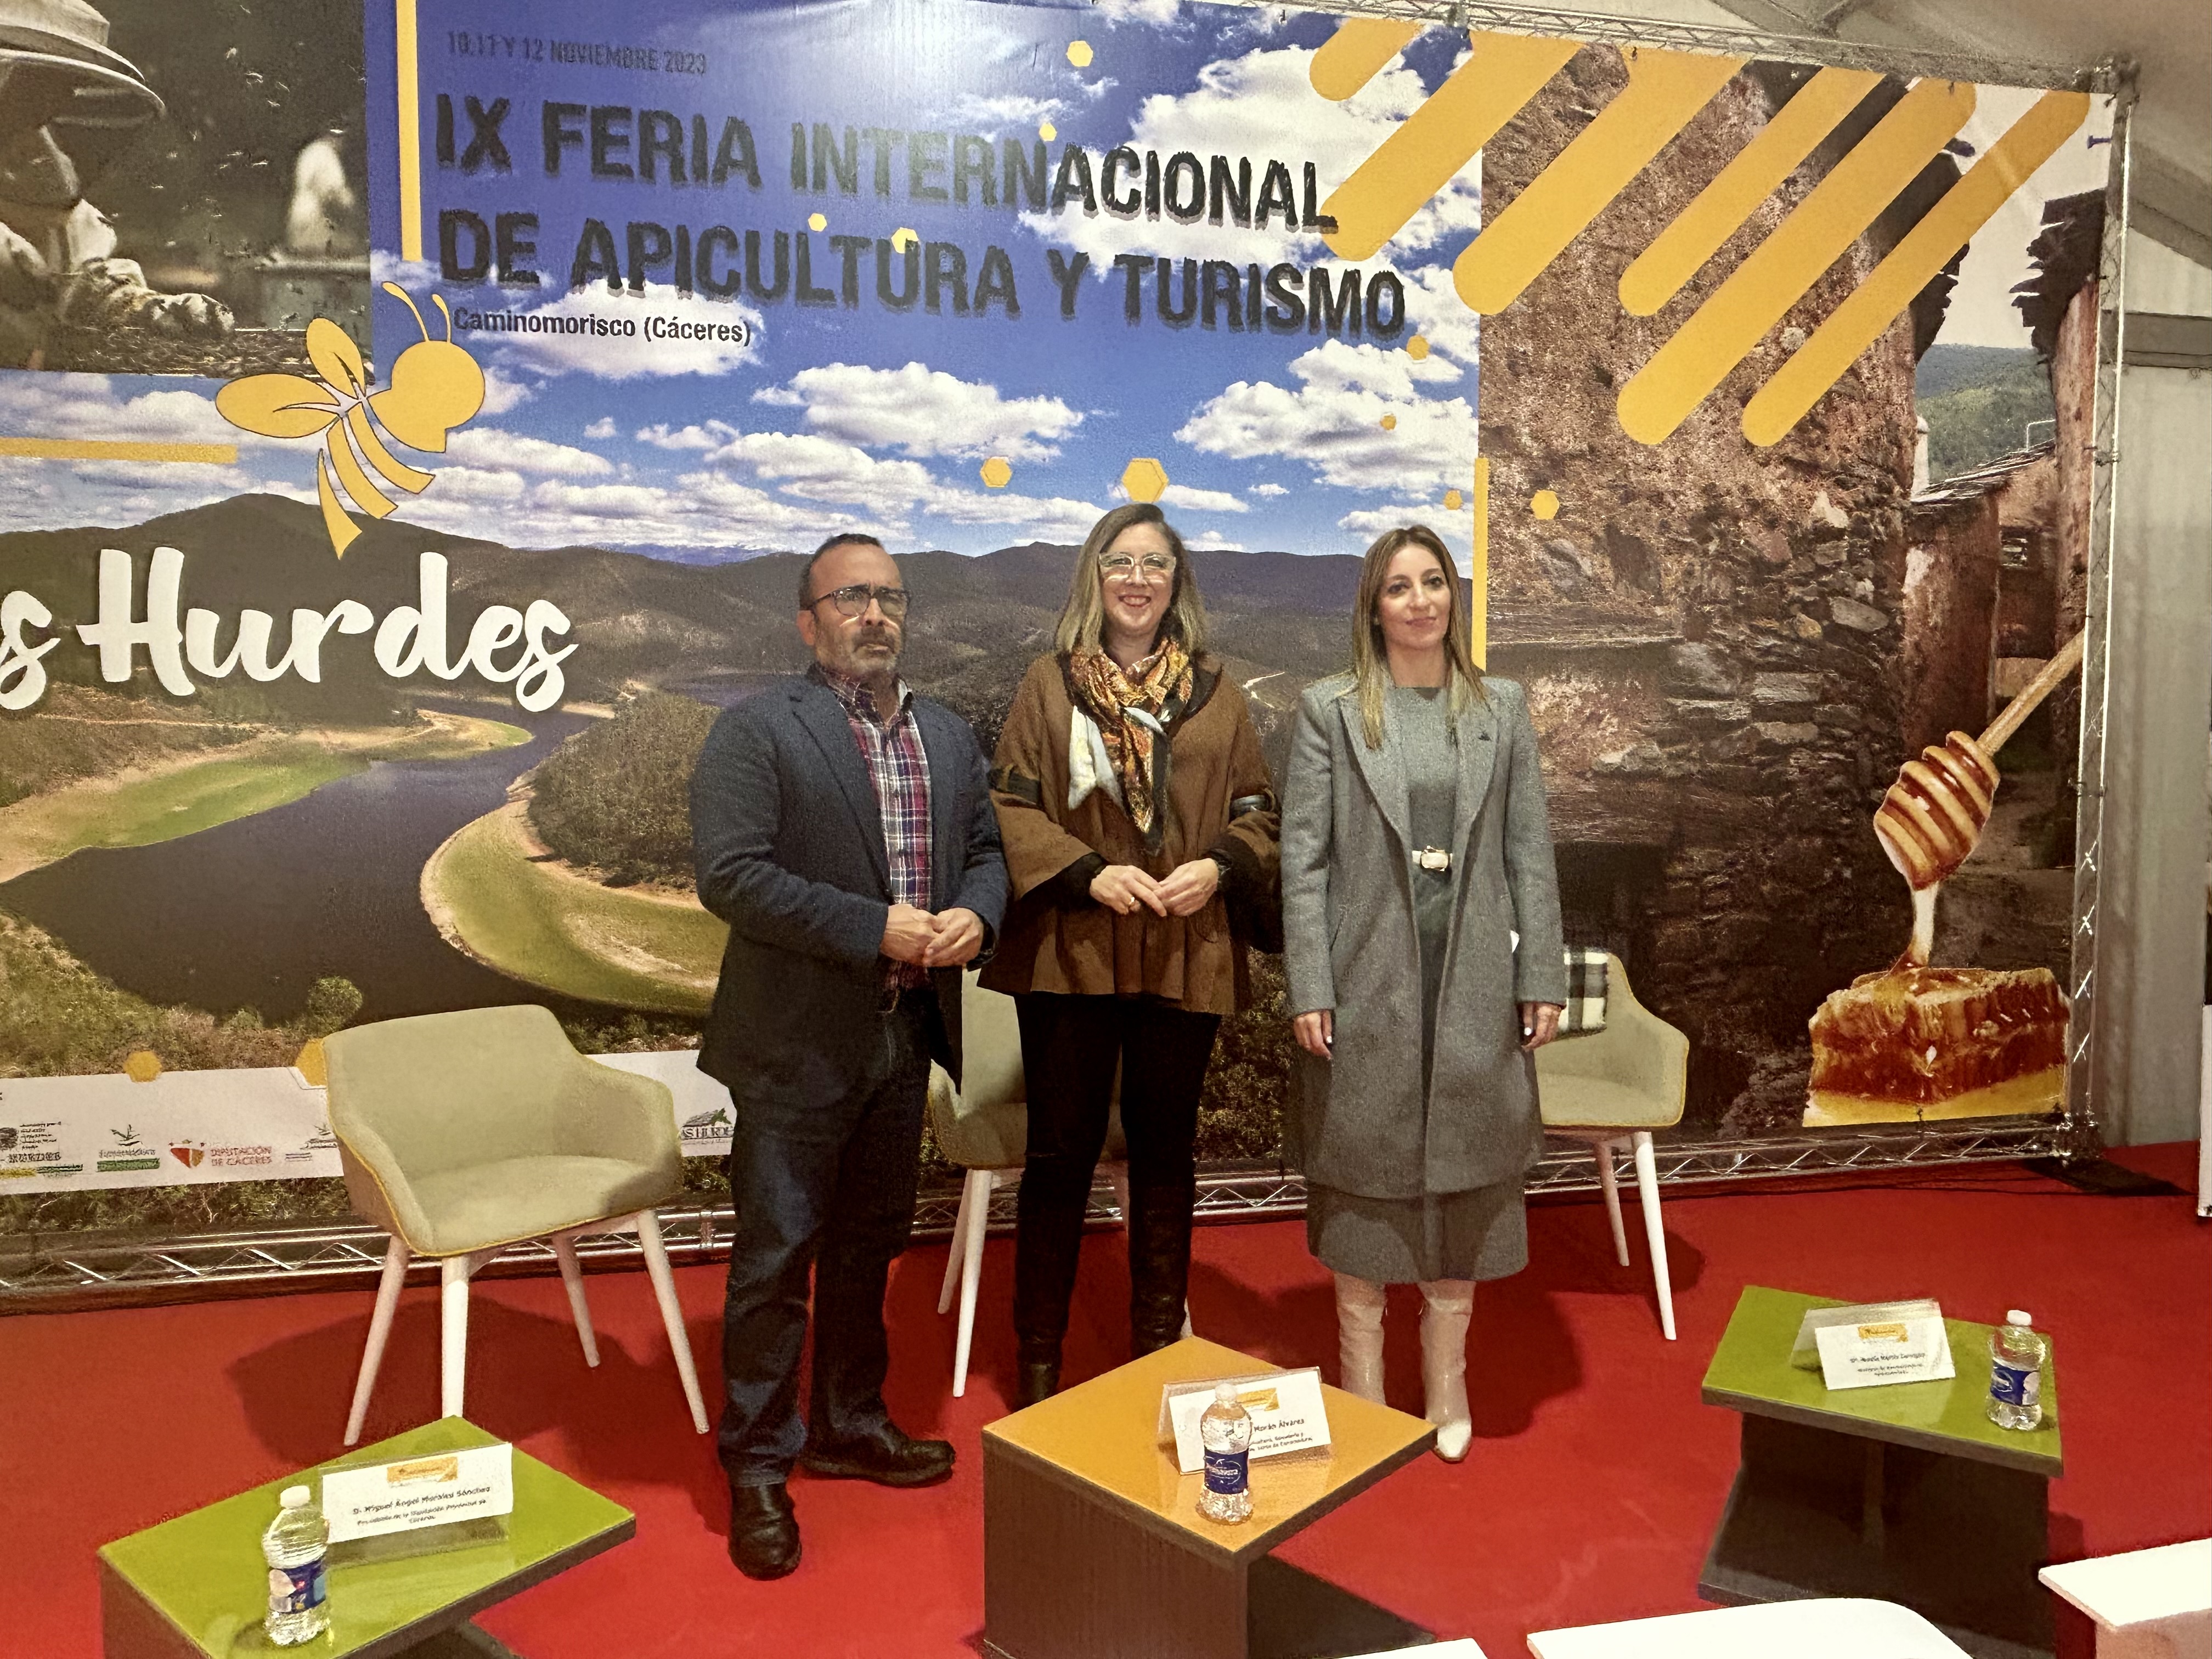 Image 4 of article Mercedes Morán garantiza el apoyo de la Junta a los sectores apícola y turístico en la IX Feria Internacional de Apicultura y Turismo de las Hurdes